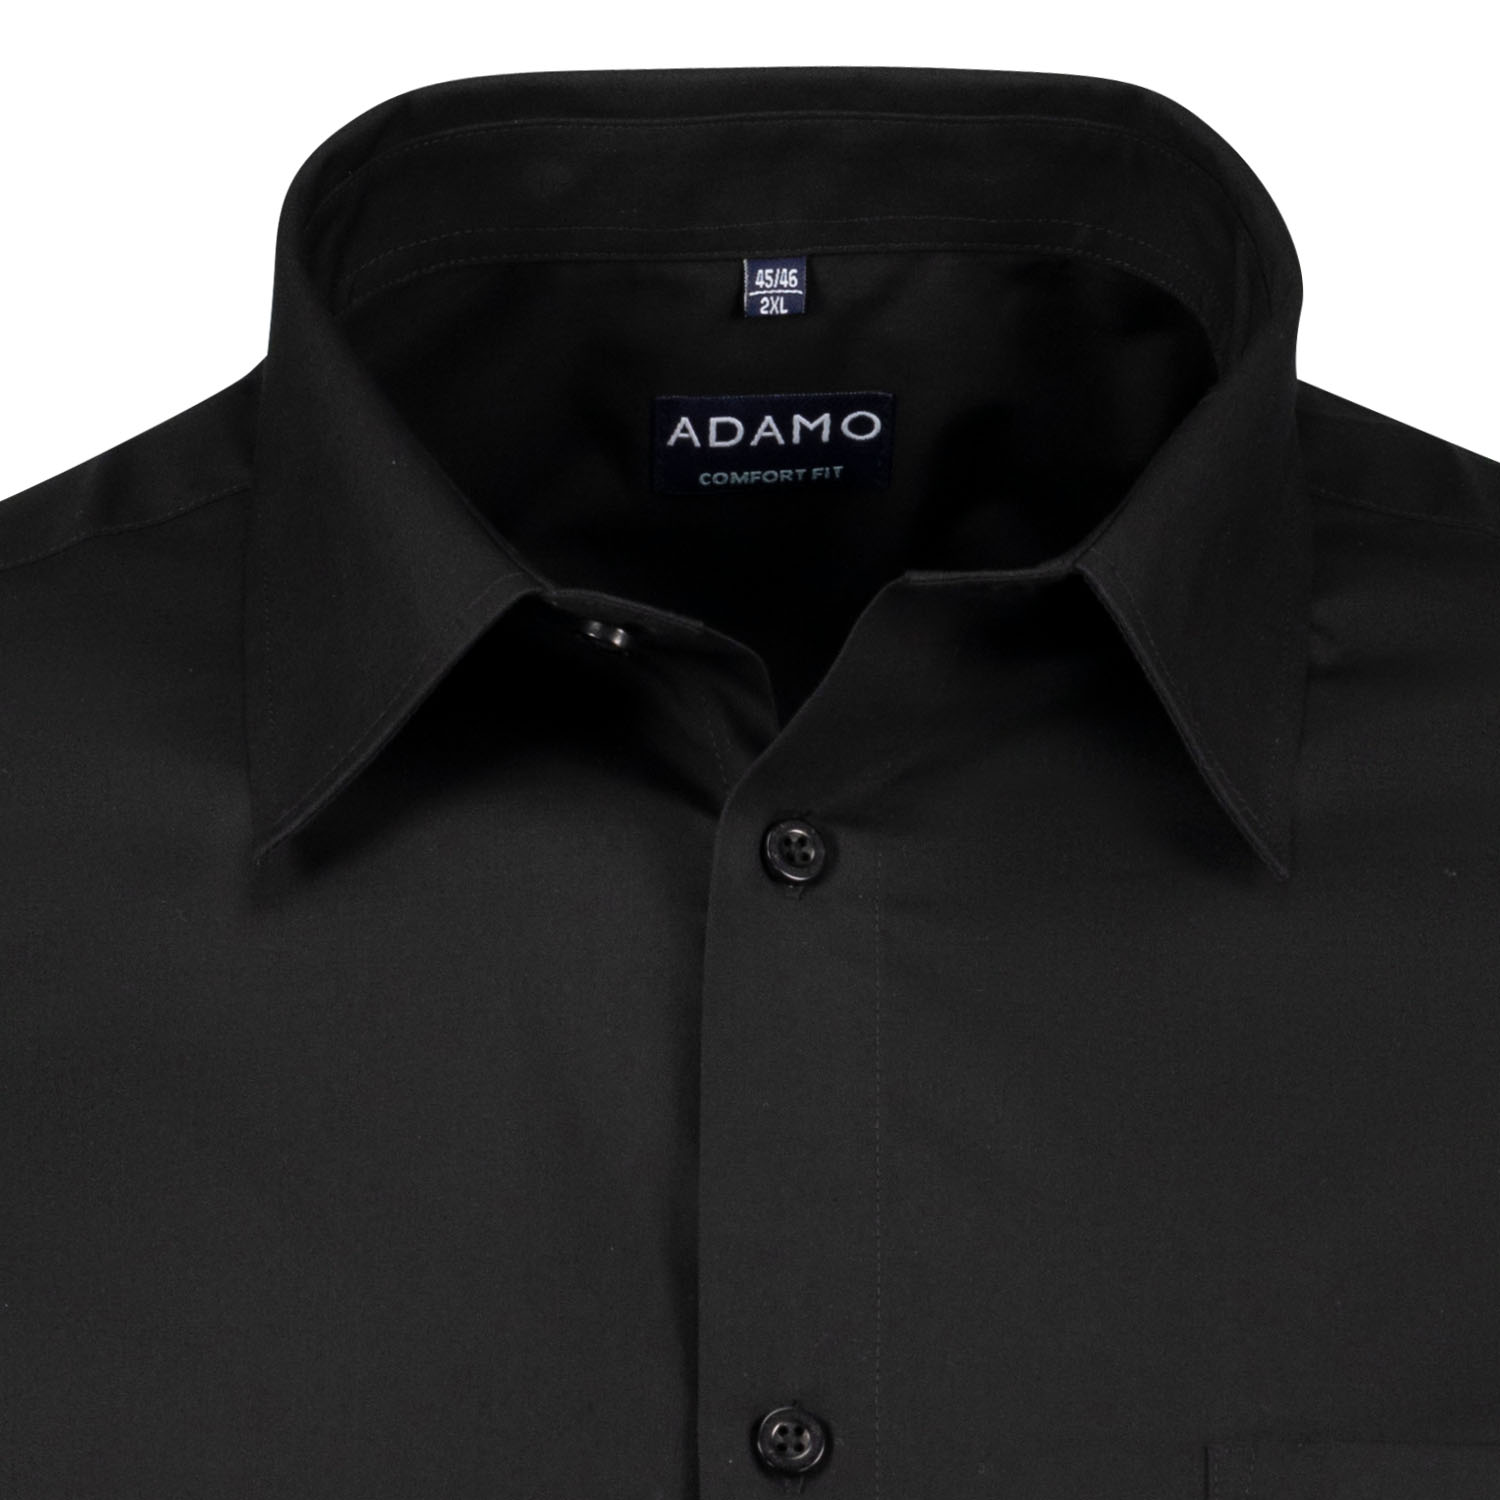 Schwarzes Herren Businesshemd Hemd COMFORT FIT langarm Serie "John" von ADAMO in großen Größen von 2XL bis 10XL